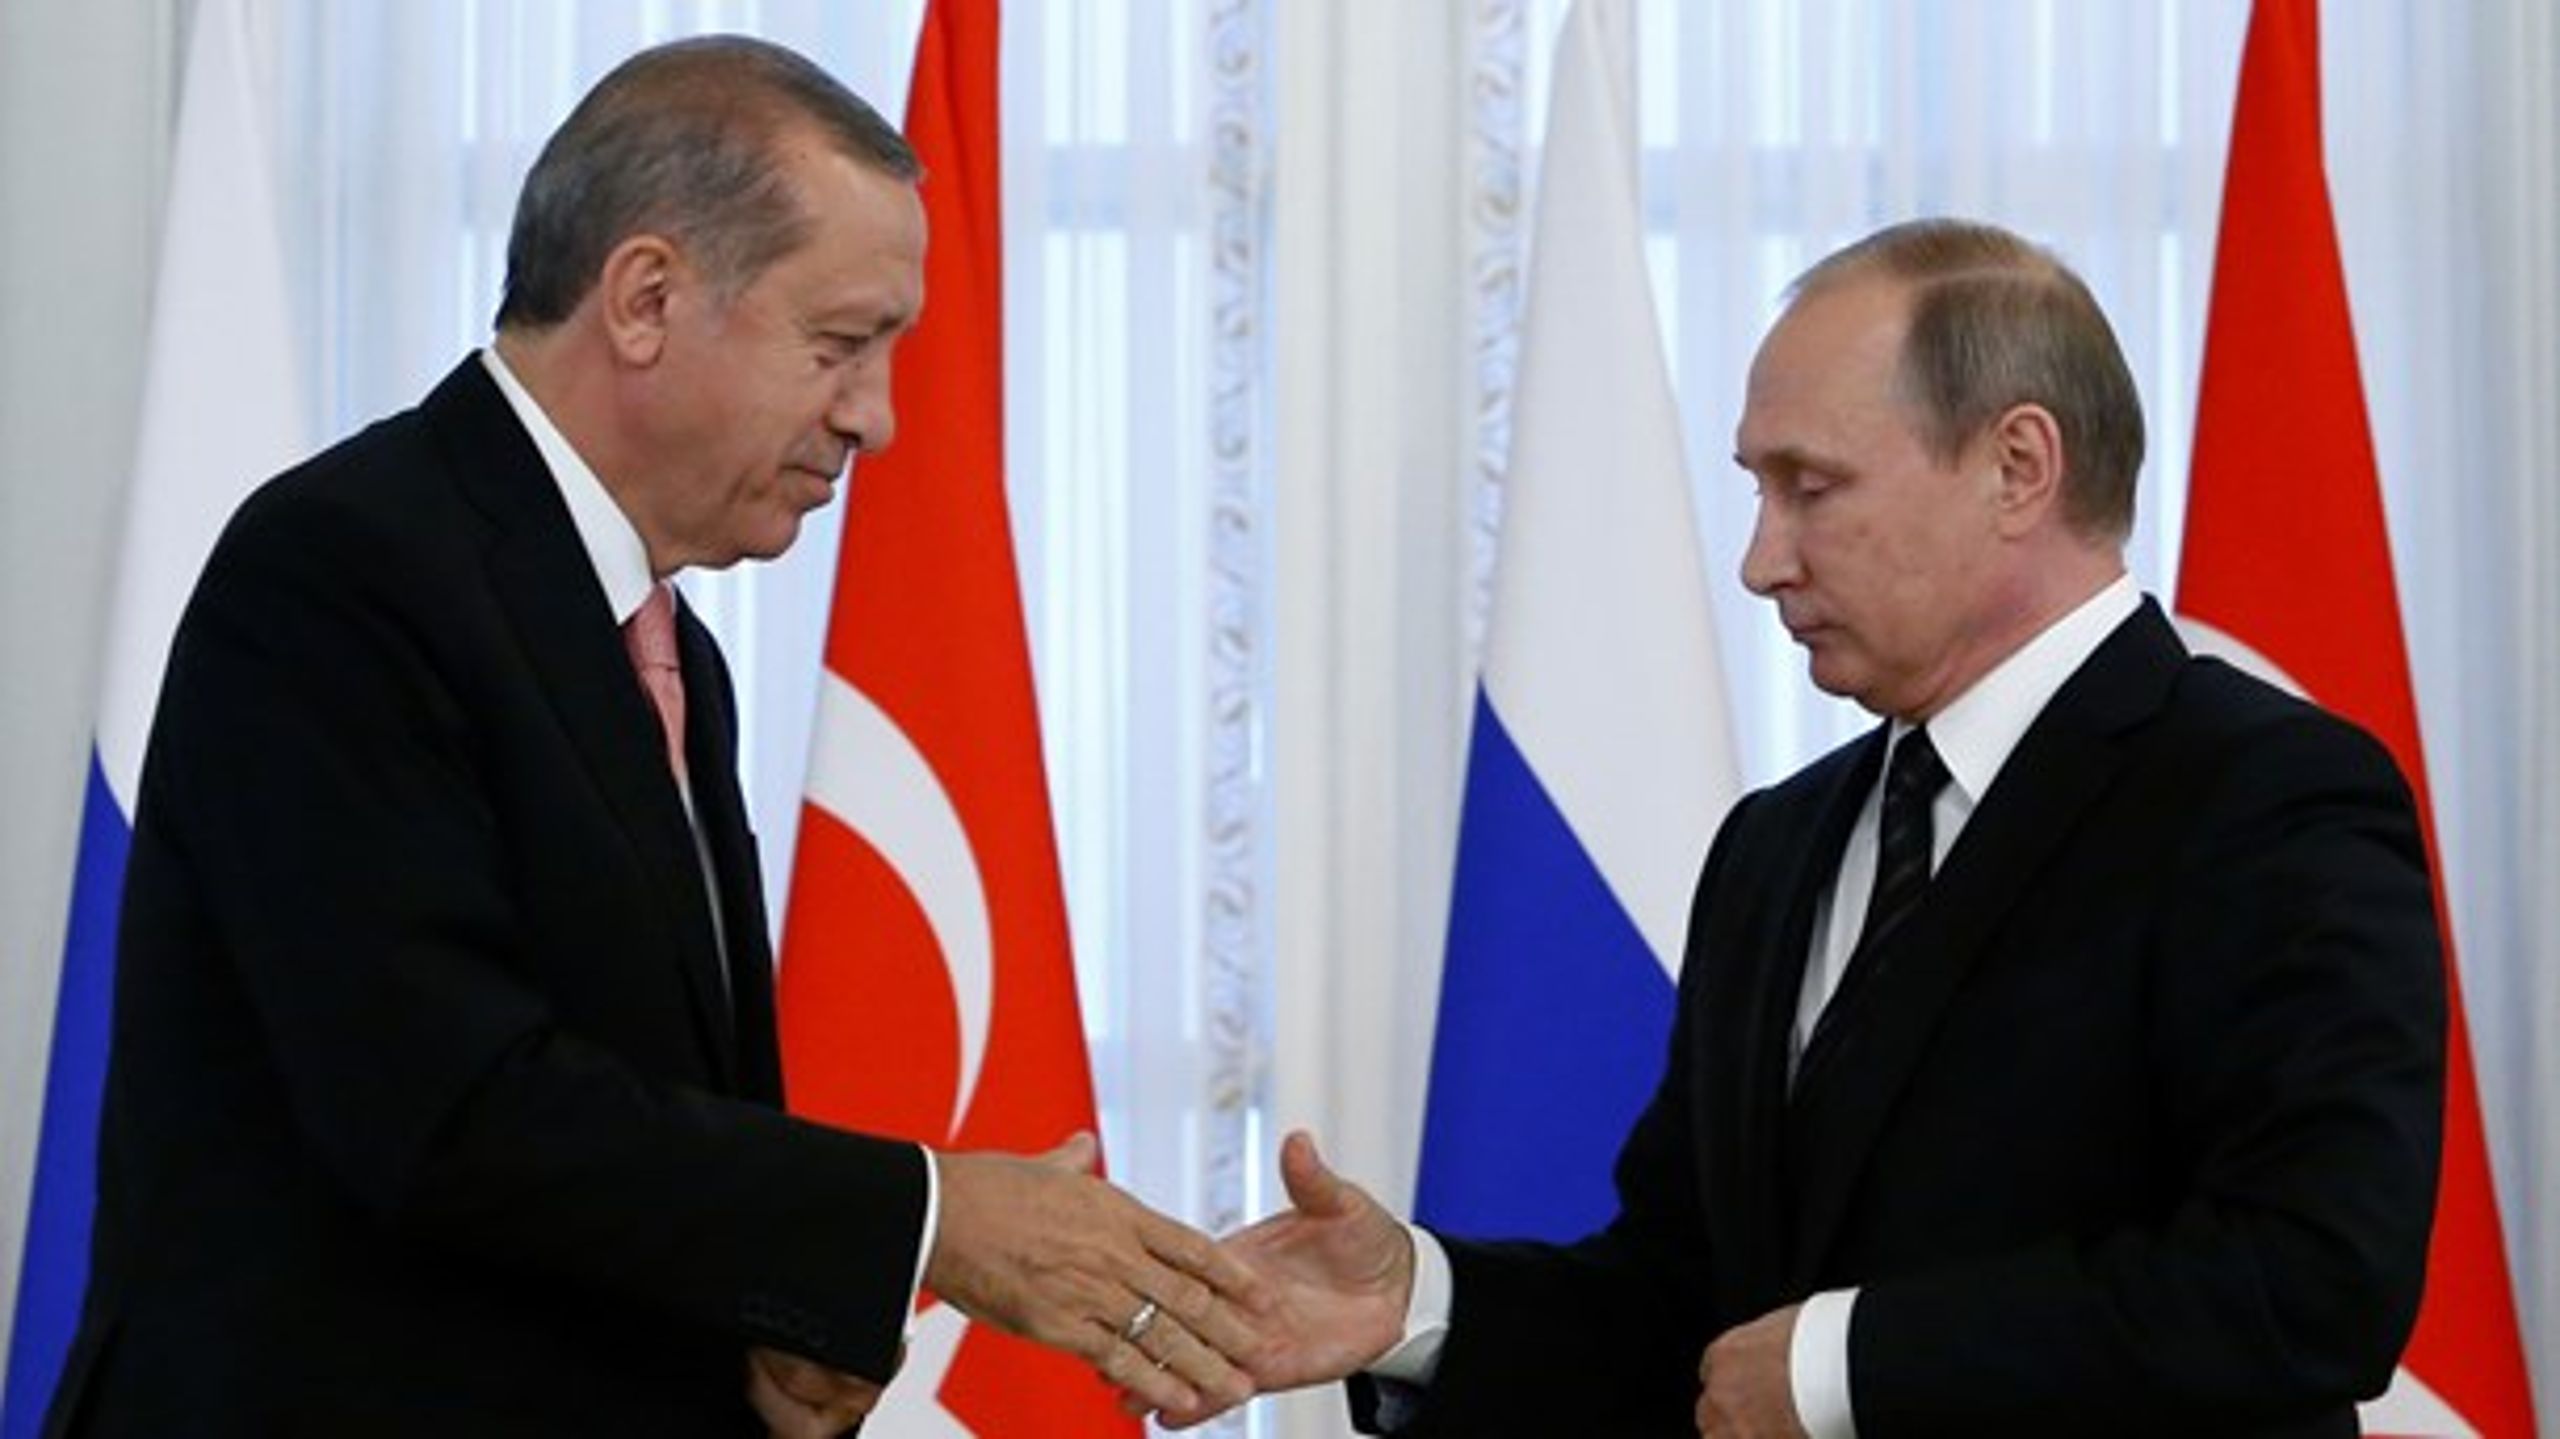 Den første, der ønskede Erdogan tillykke efter nedkæmpelsen af kupforsøget i 2016, var præsident Putin, skriver&nbsp;Erik Boel&nbsp;.&nbsp;